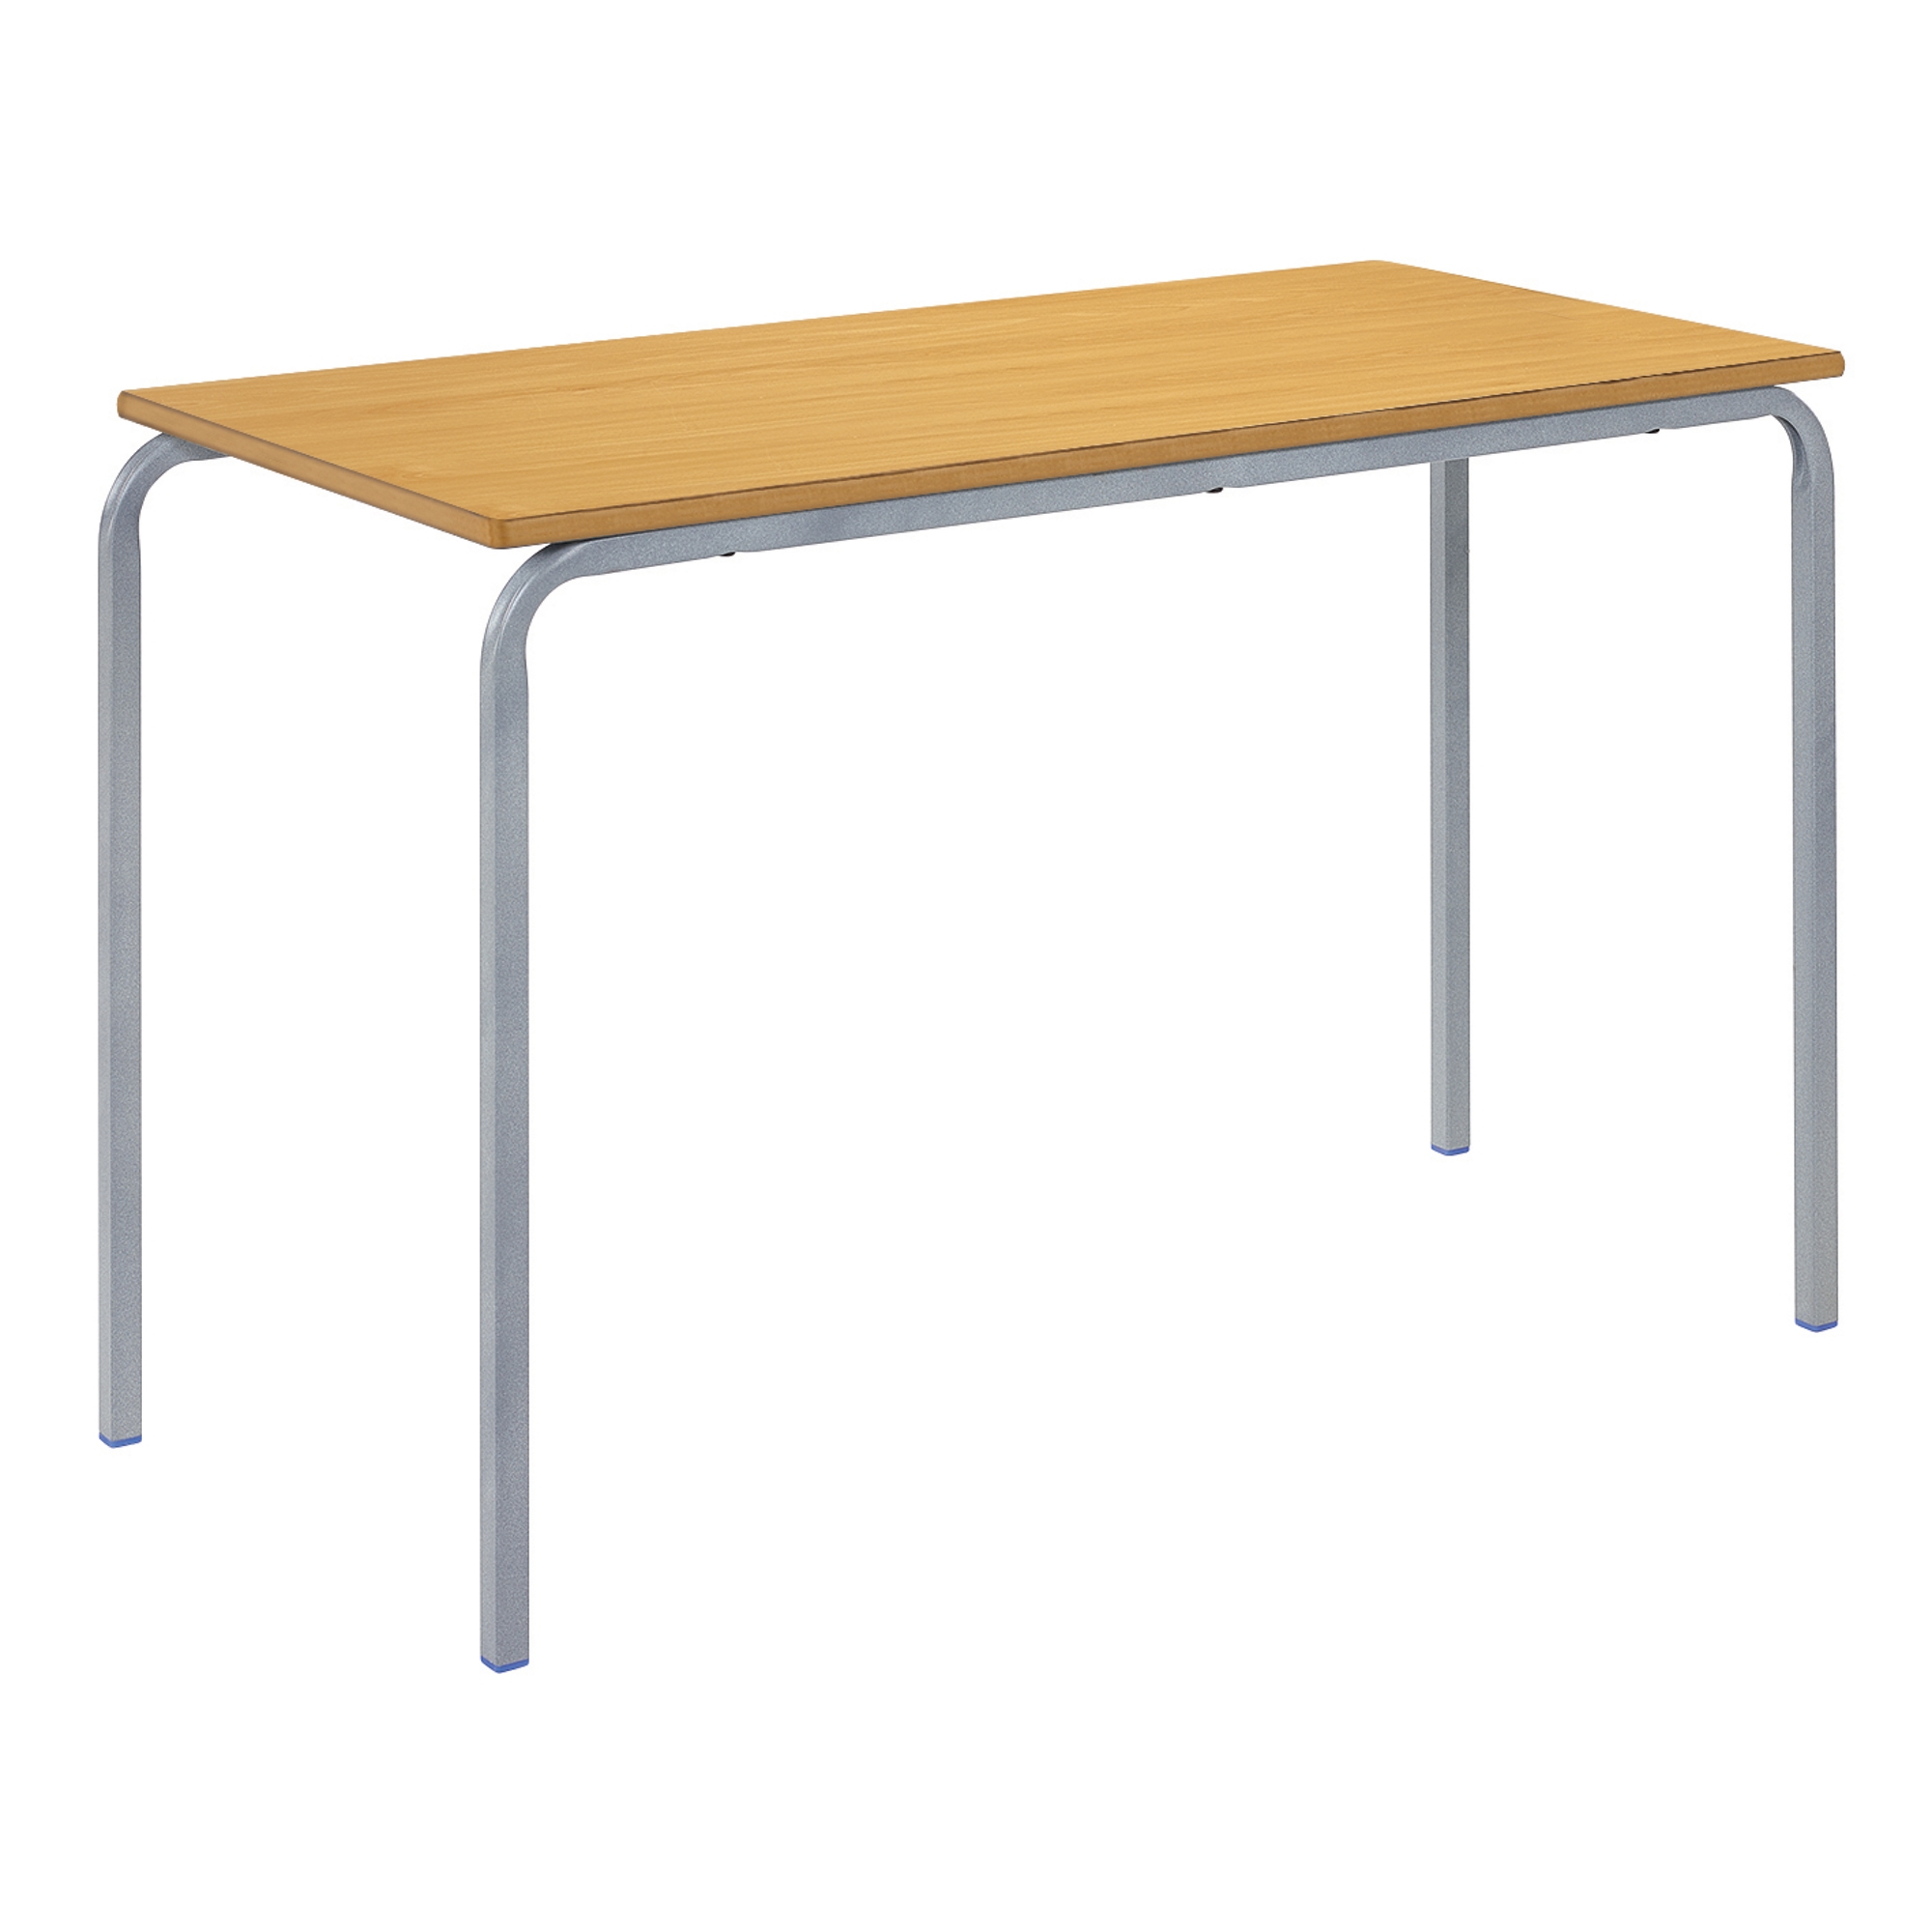 Classmates Rectangular Crushed Bent Classroom Table - 1100 x 550 x 710mm - Beech